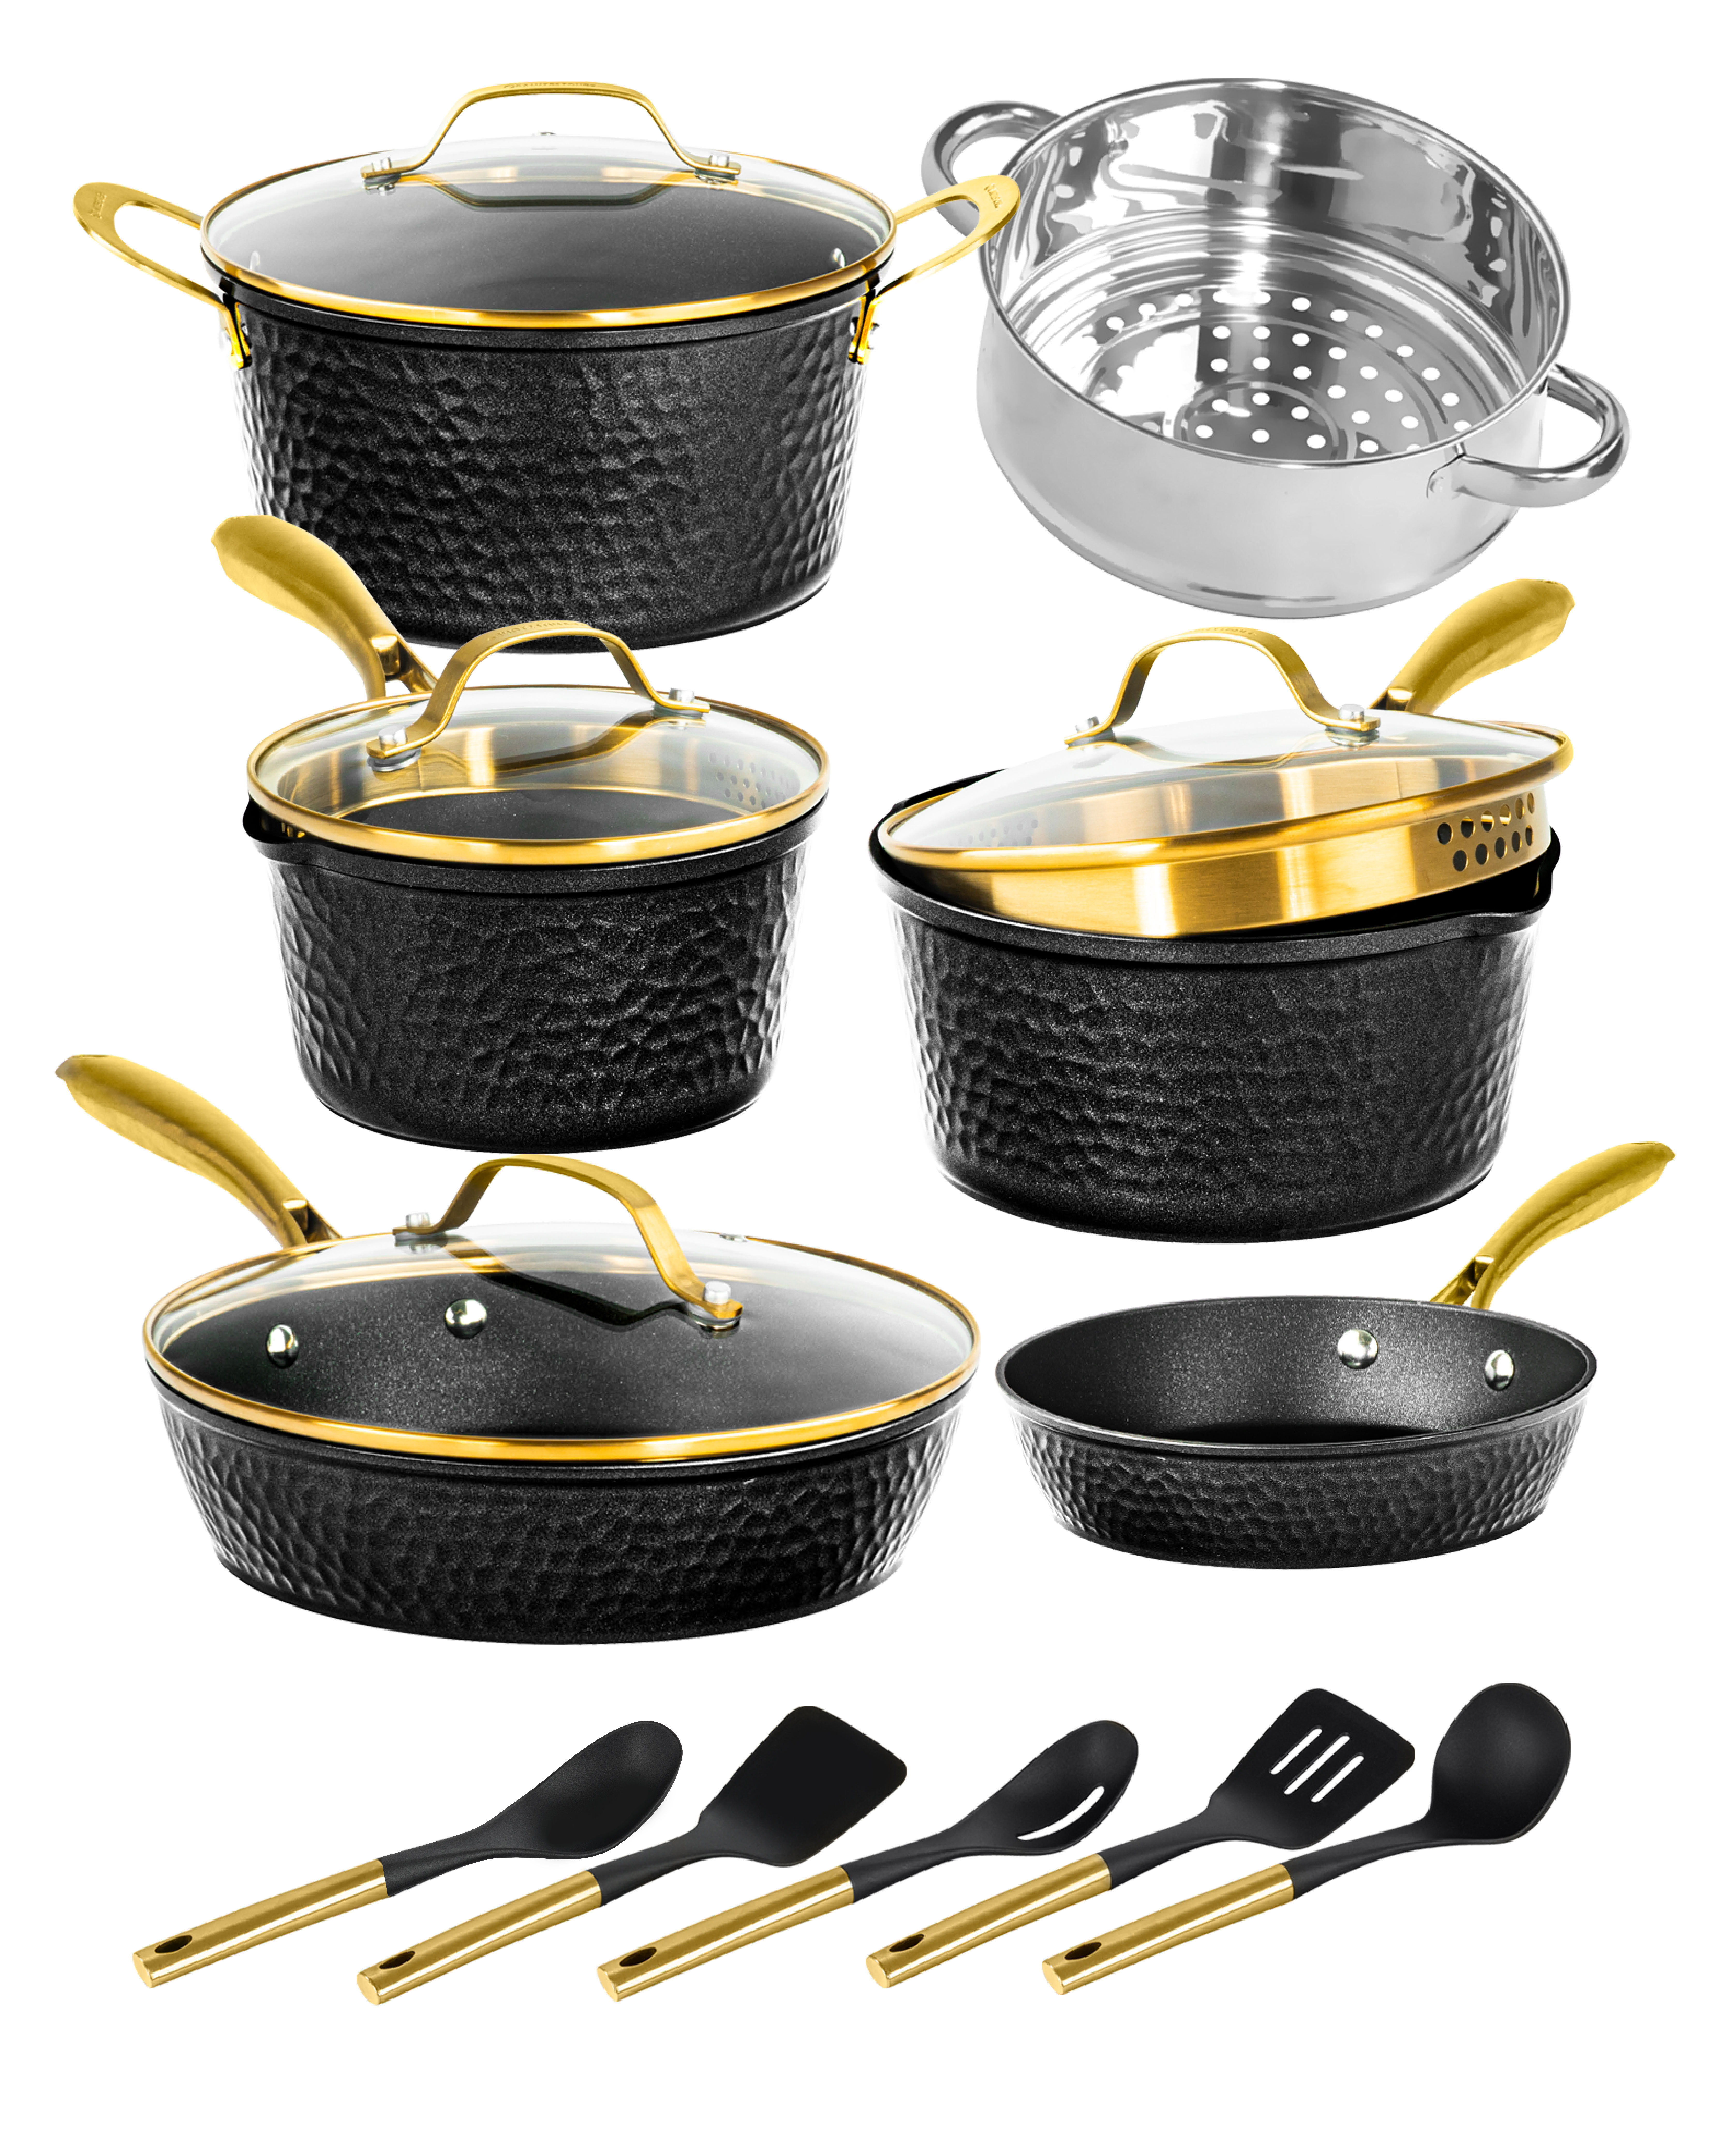 https://assets.wfcdn.com/im/67732294/compr-r85/2561/256143821/granitestone-charleston-collection-hammered-black-15-piece-nonstick-cookware-set-with-utensils.jpg